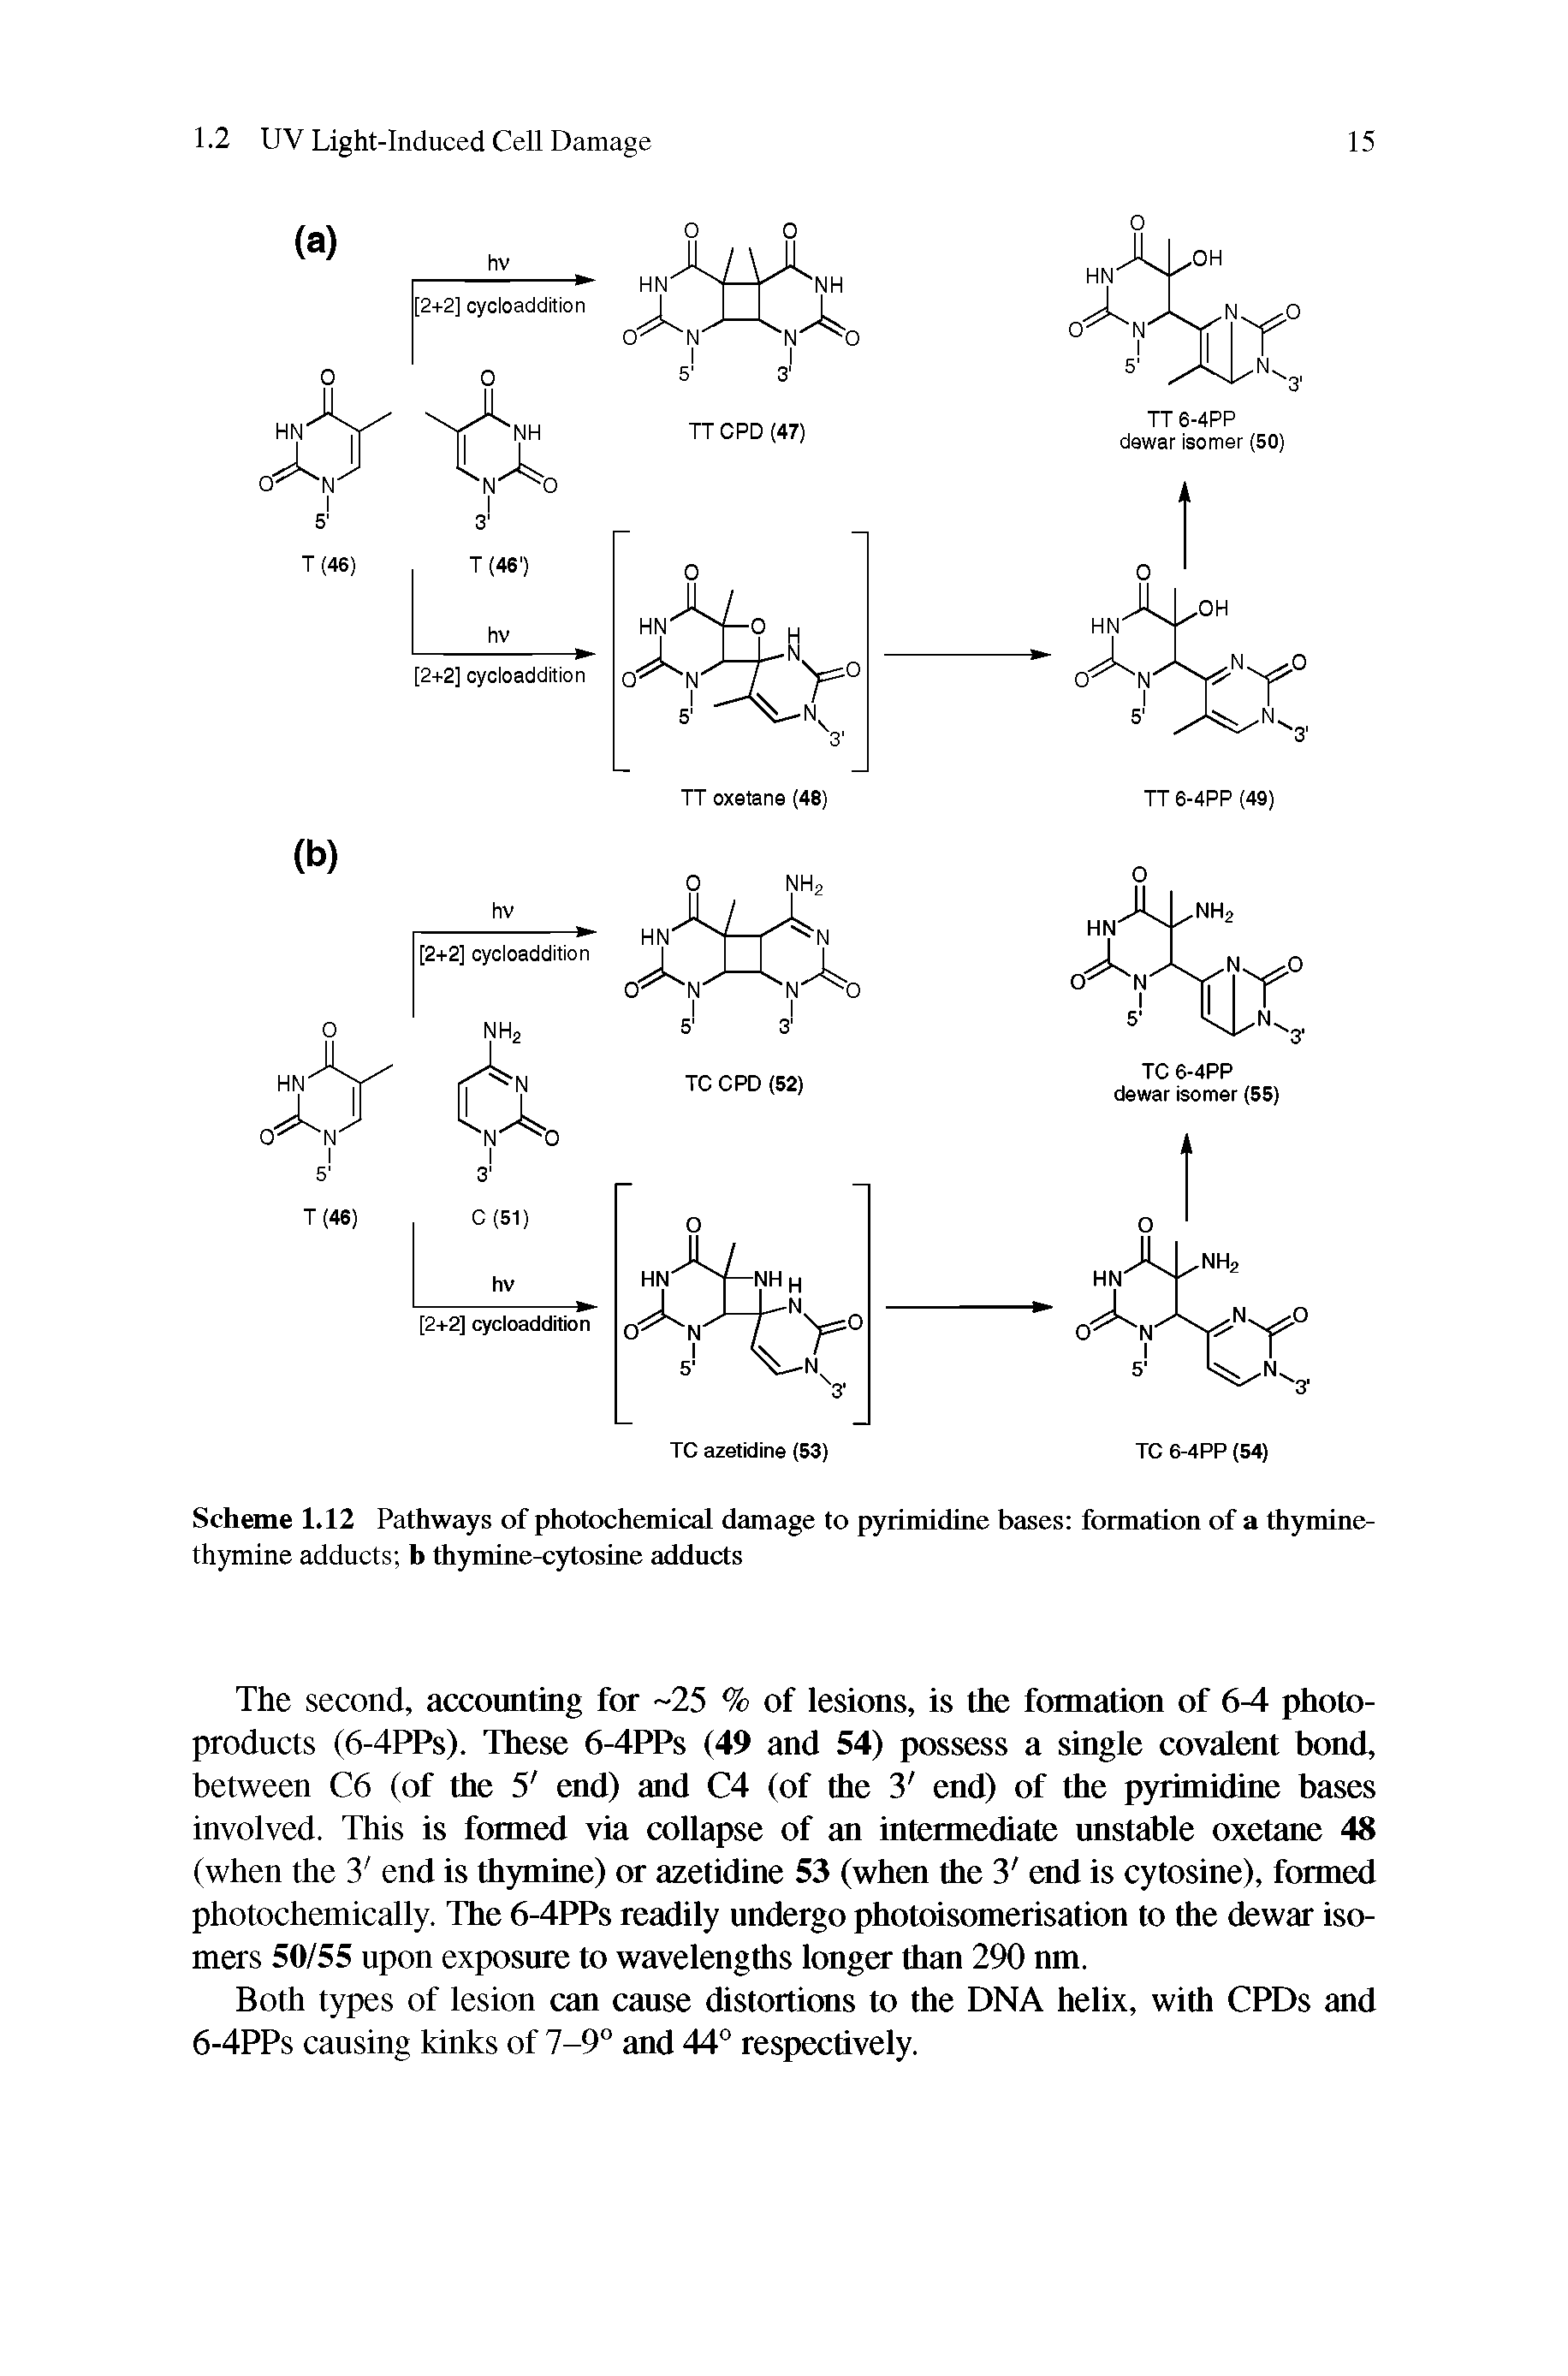 Scheme 1.12 Pathways of photochemical damage to pyrimidine bases fonnation of a thymine-thymine adducts b thymine-cytosine adducts...